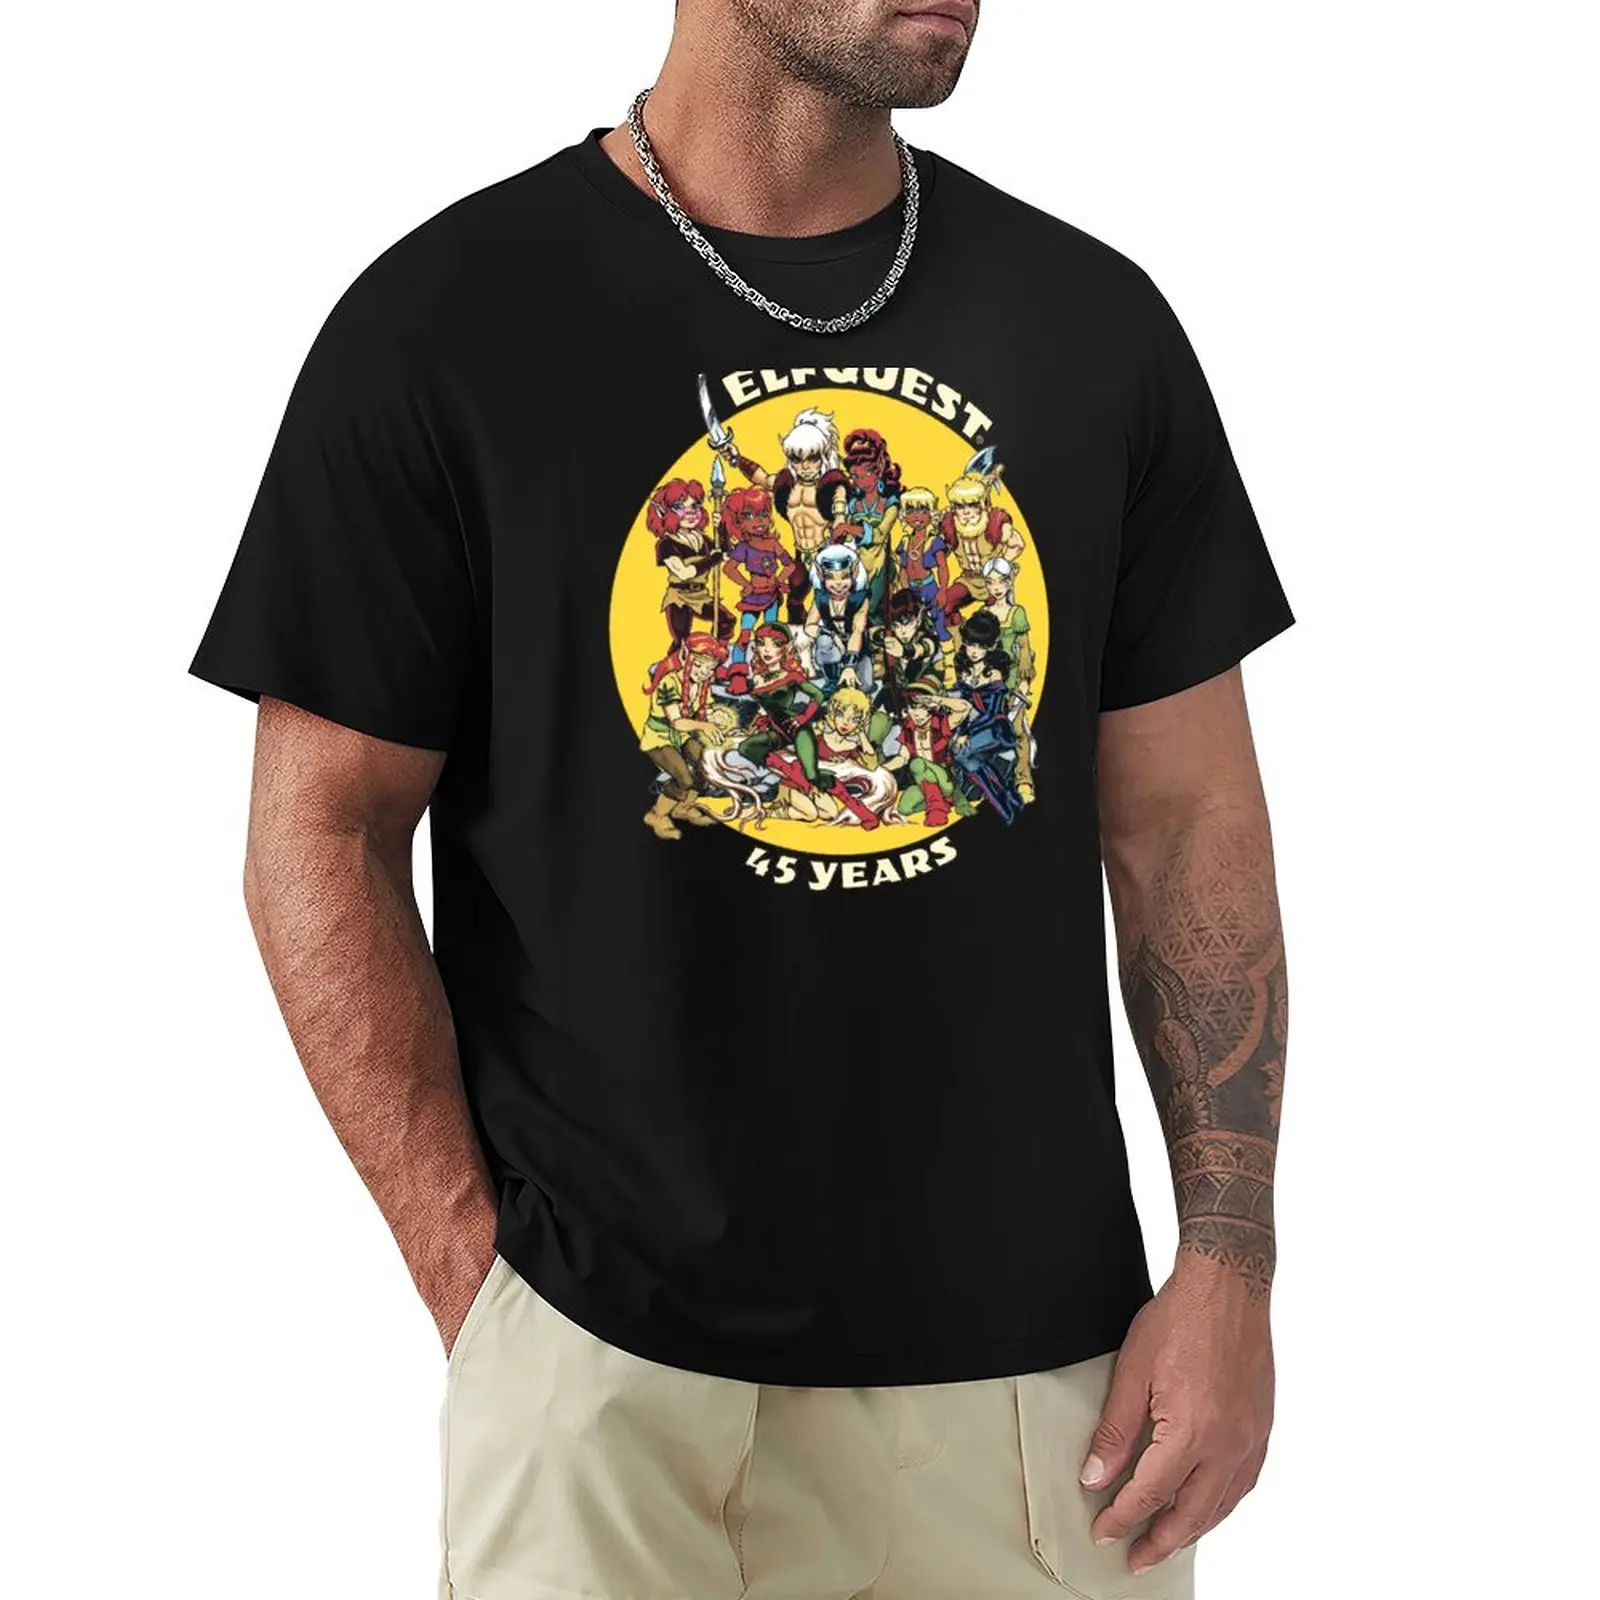 

Футболка брендовая, футболка ElfQuest: серого цвета 45 лет, аниме топы, футболка с коротким рукавом для мужчин, повседневные футболки